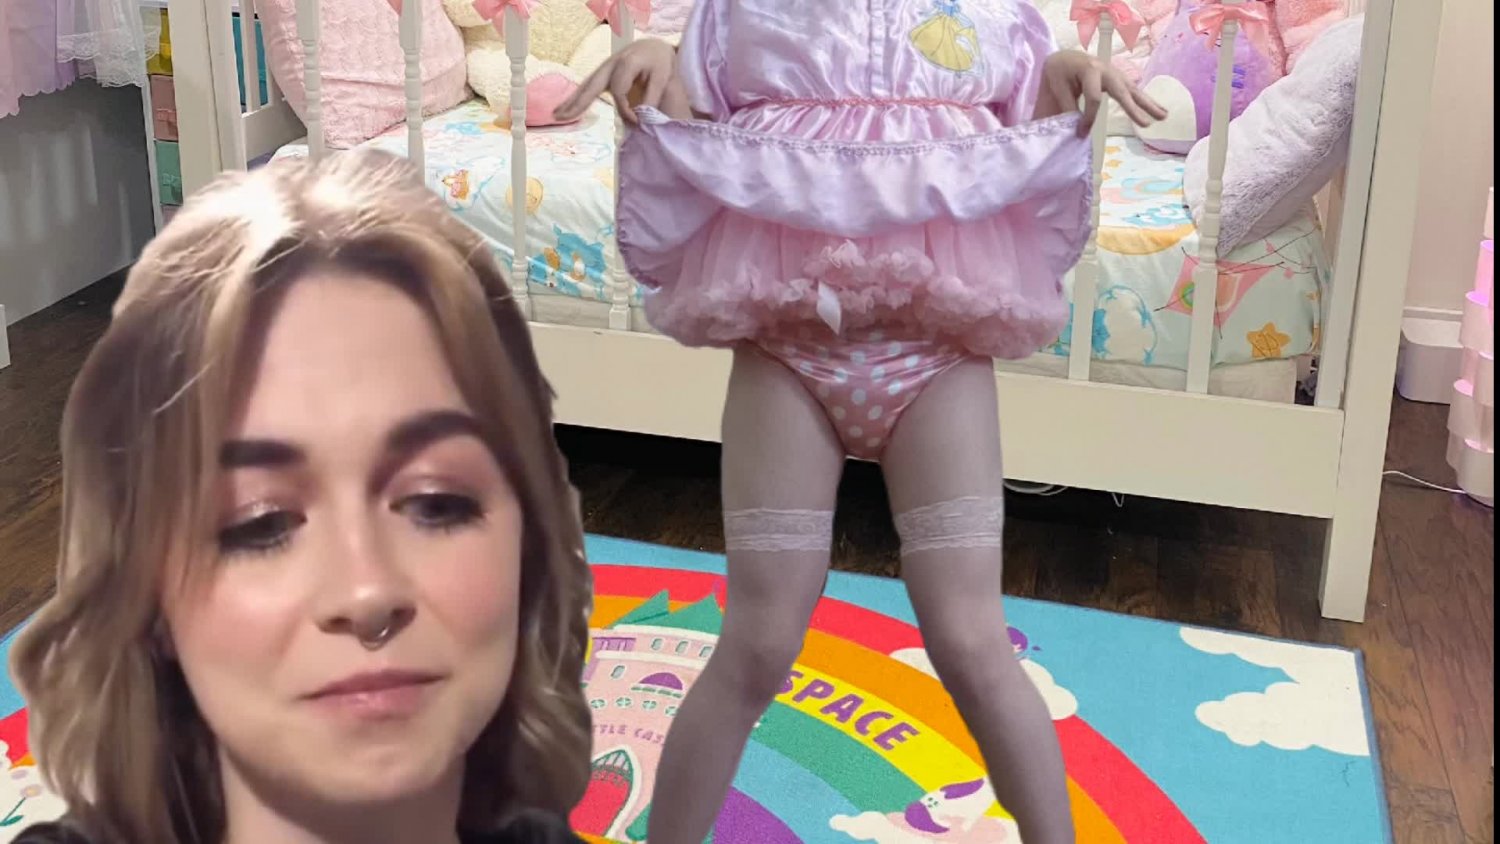 swinger sex websites diaper baby humiliation Porn Pics Hd